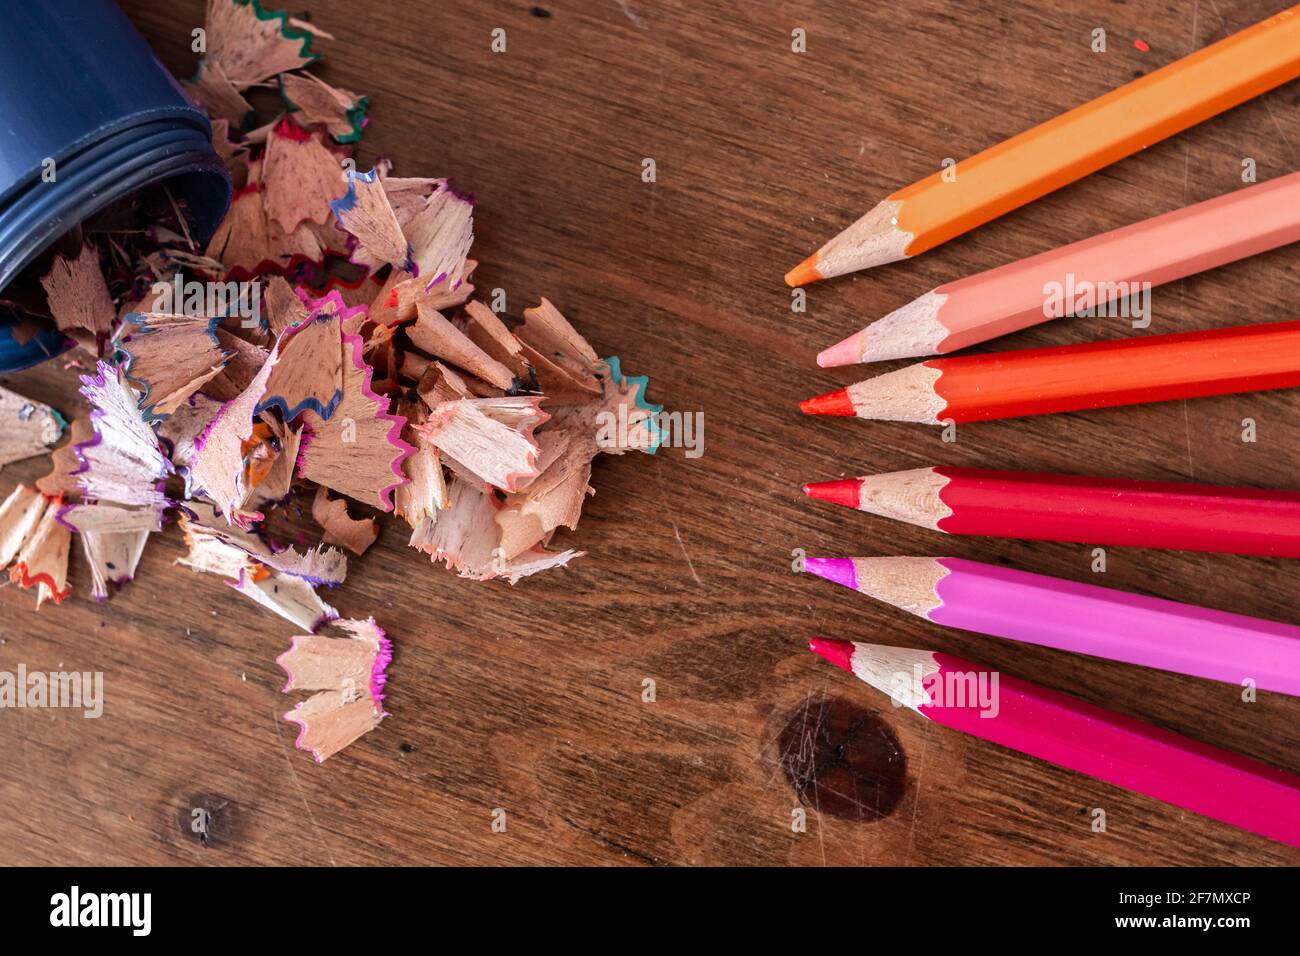 Bleistiftzeichnspangen, die aus einem blauen Bleistiftspitzer ohne Deckel auf einen Hartholztisch auslaufen, lila, orange, rosa, gelb, Bleistifte aufgereiht. Stockfoto